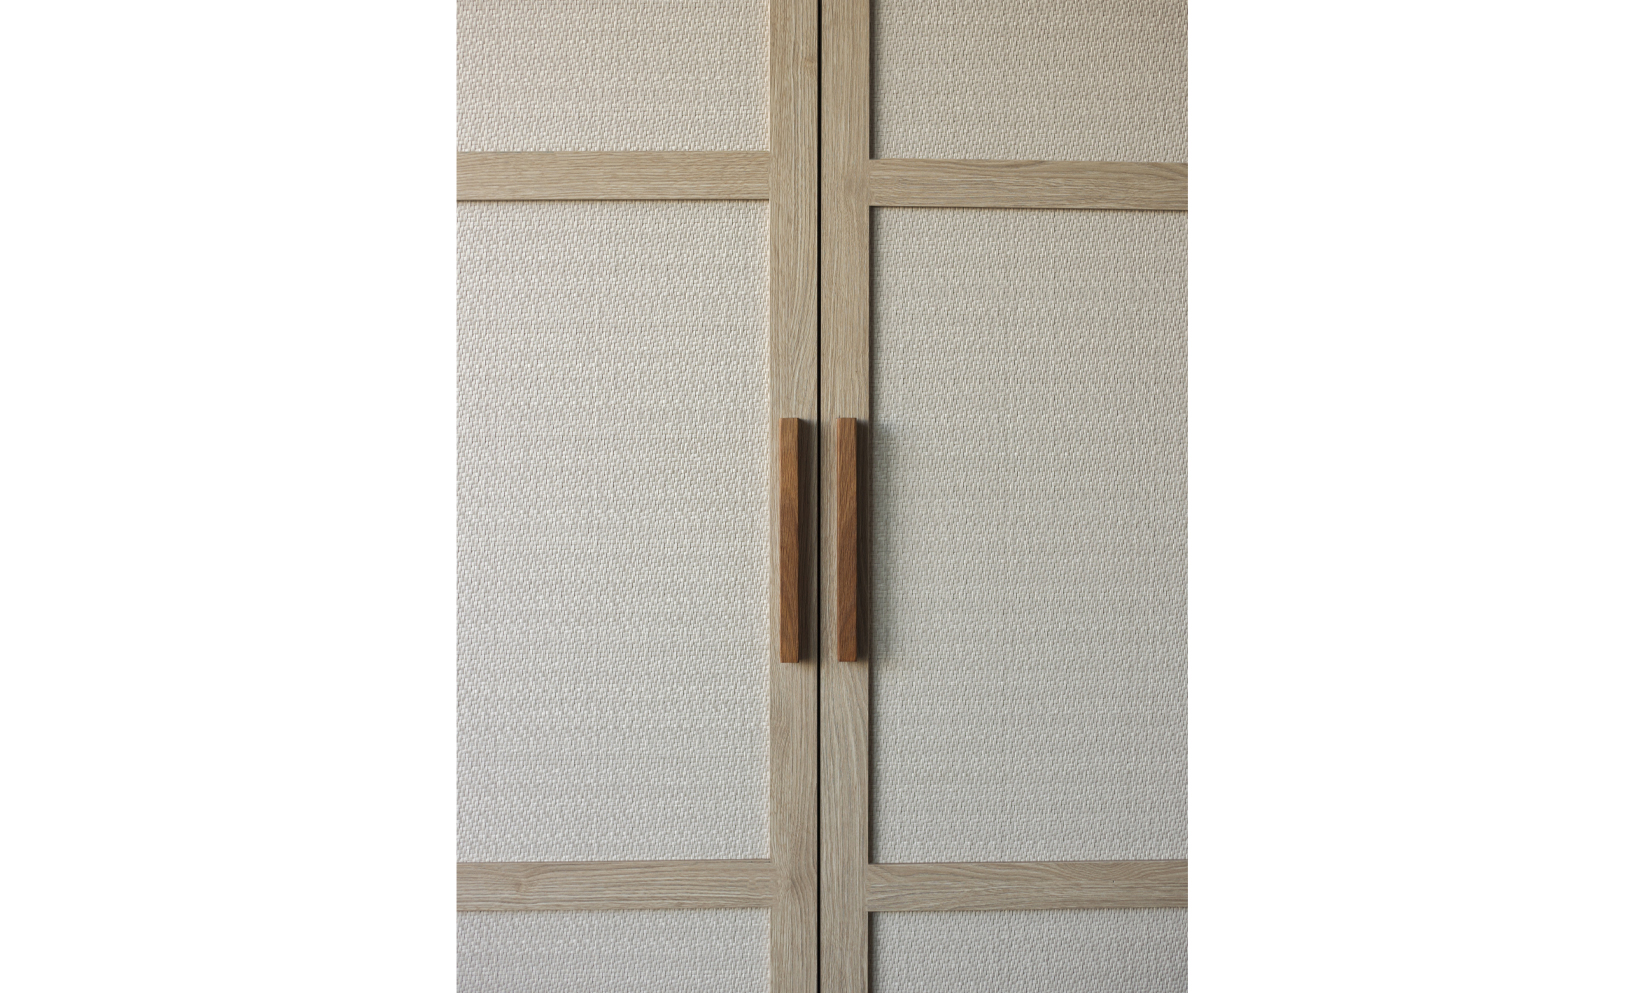 15-masazaki-interior-design-spa-massage-closet-details-fabric